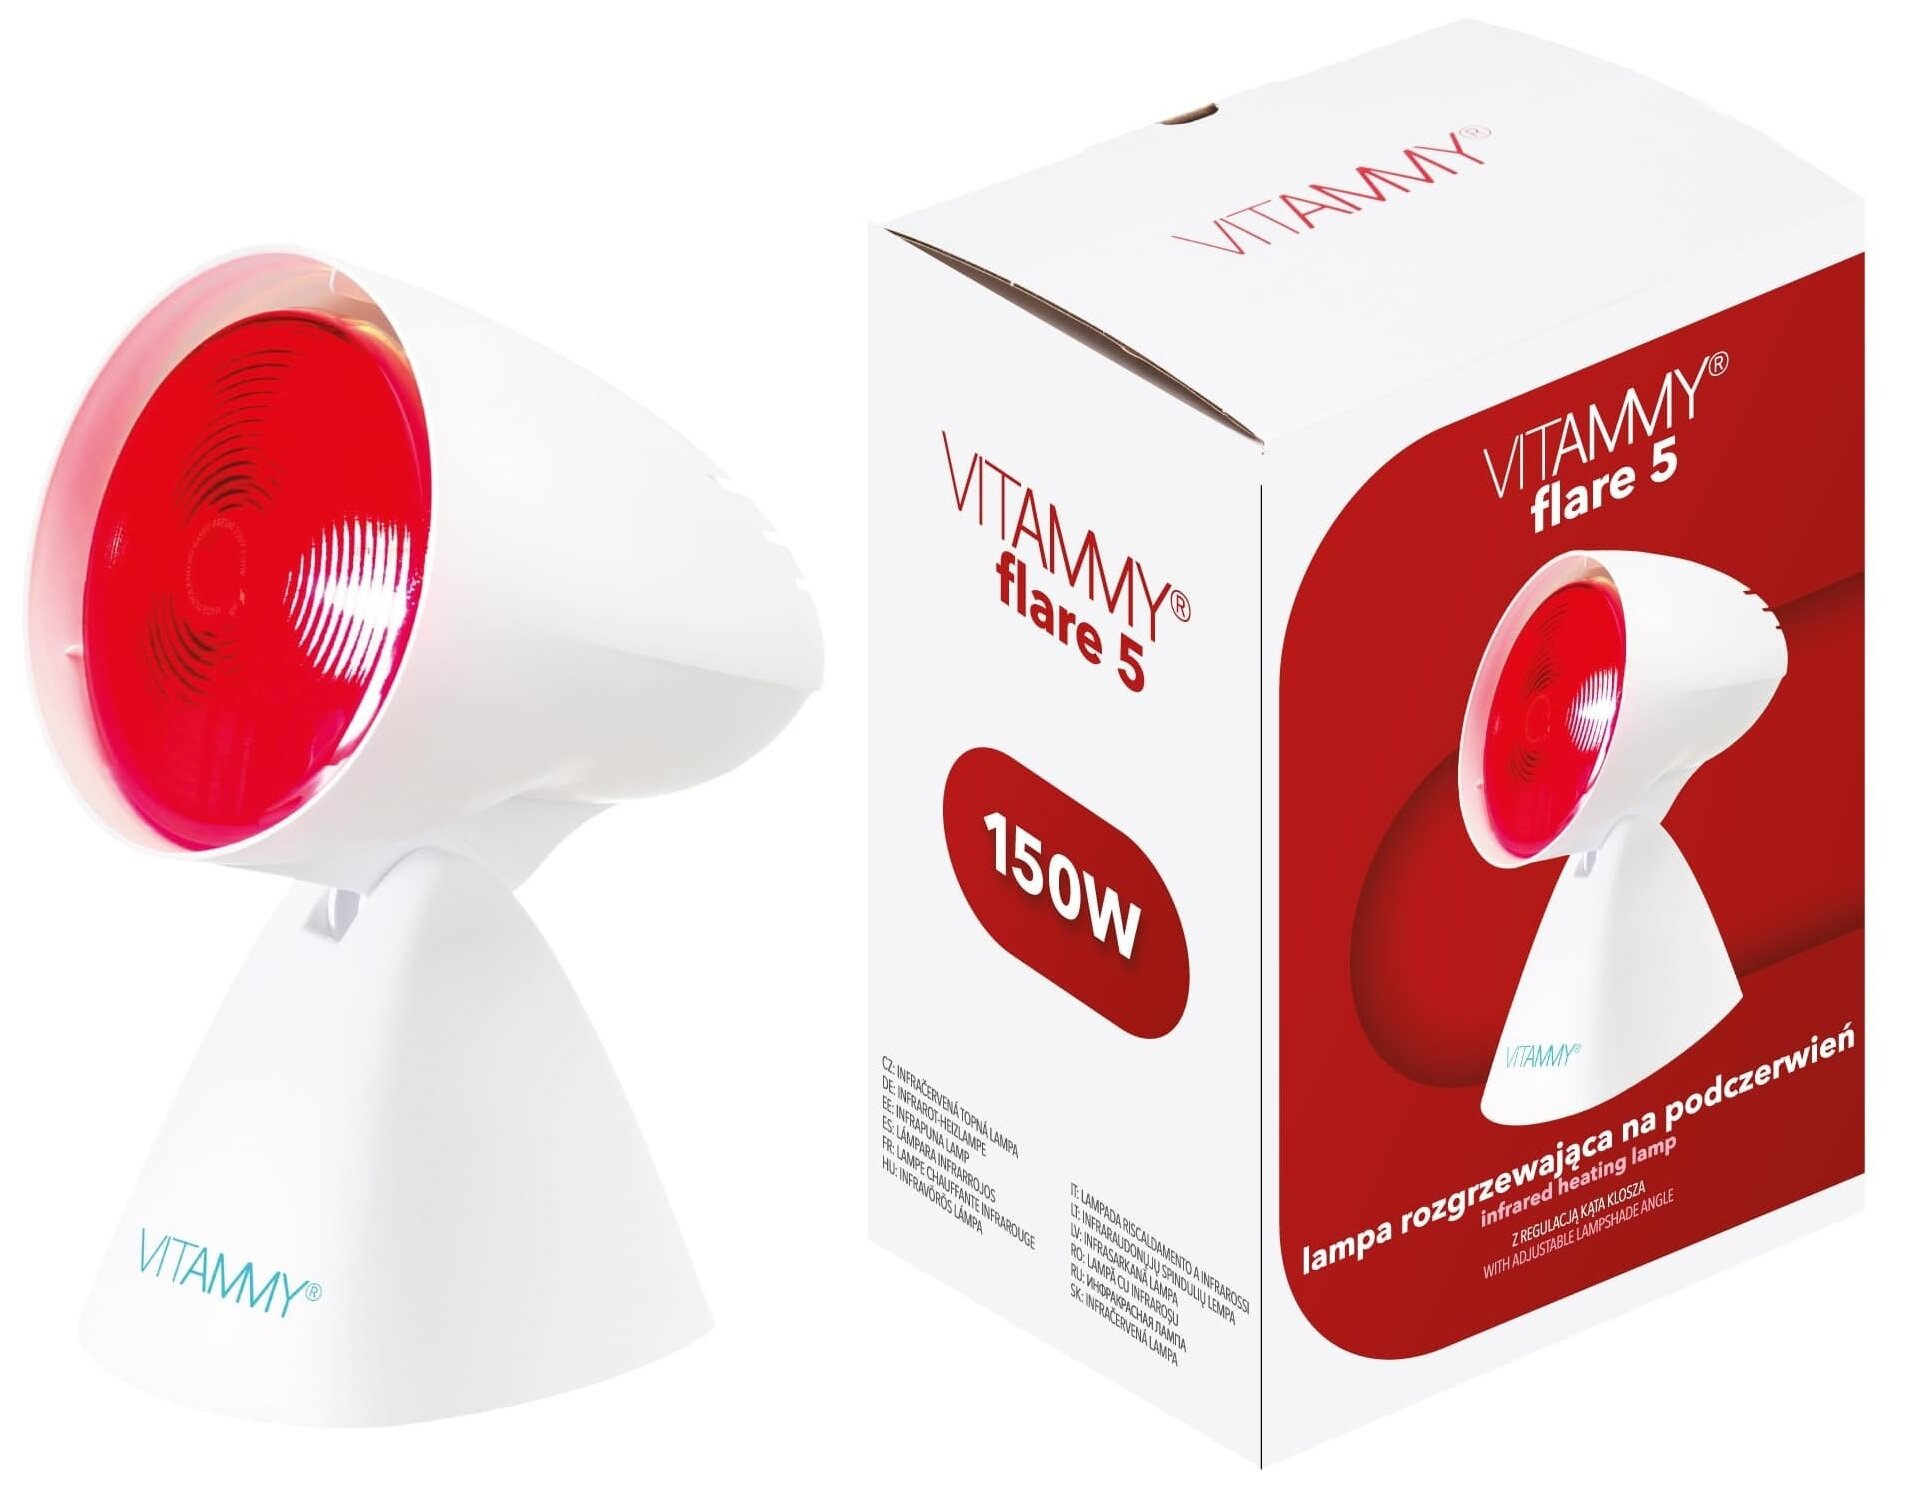 VITAMMY Flare 5 Lampa na podczerwień - niskie ceny i opinie w Media Expert